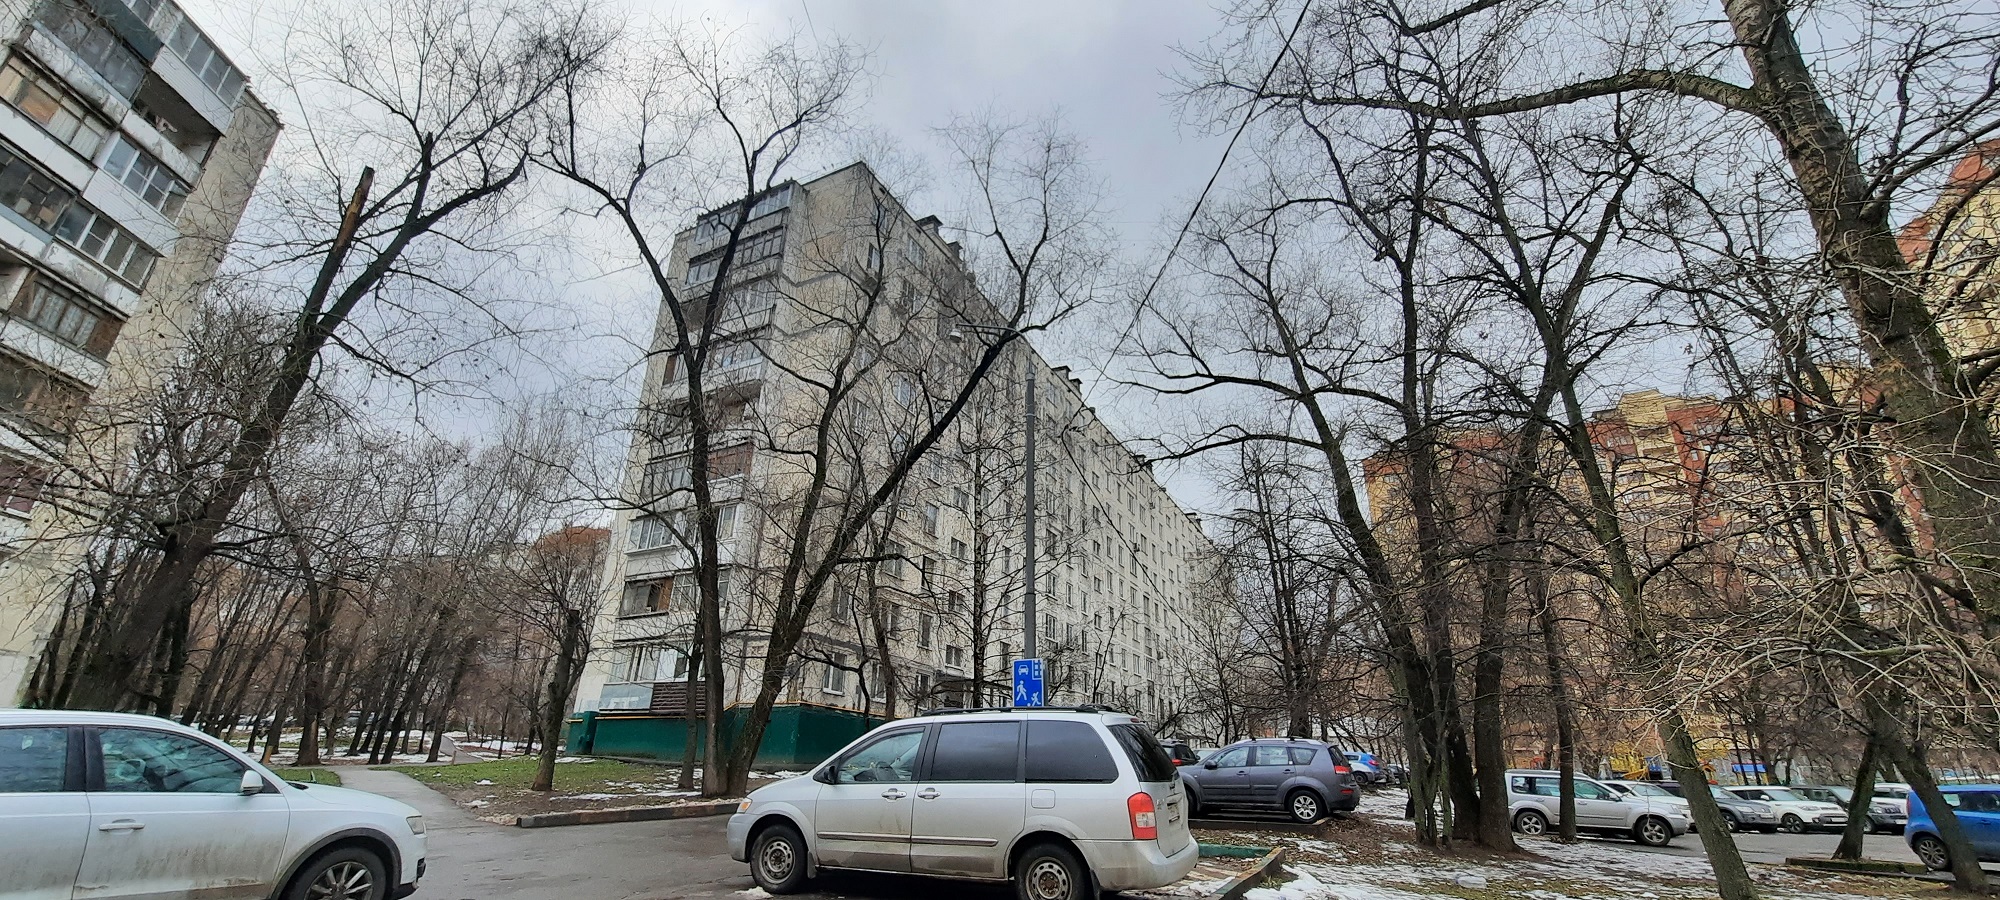 Klinskaya ulitsa, 17 - Moscow